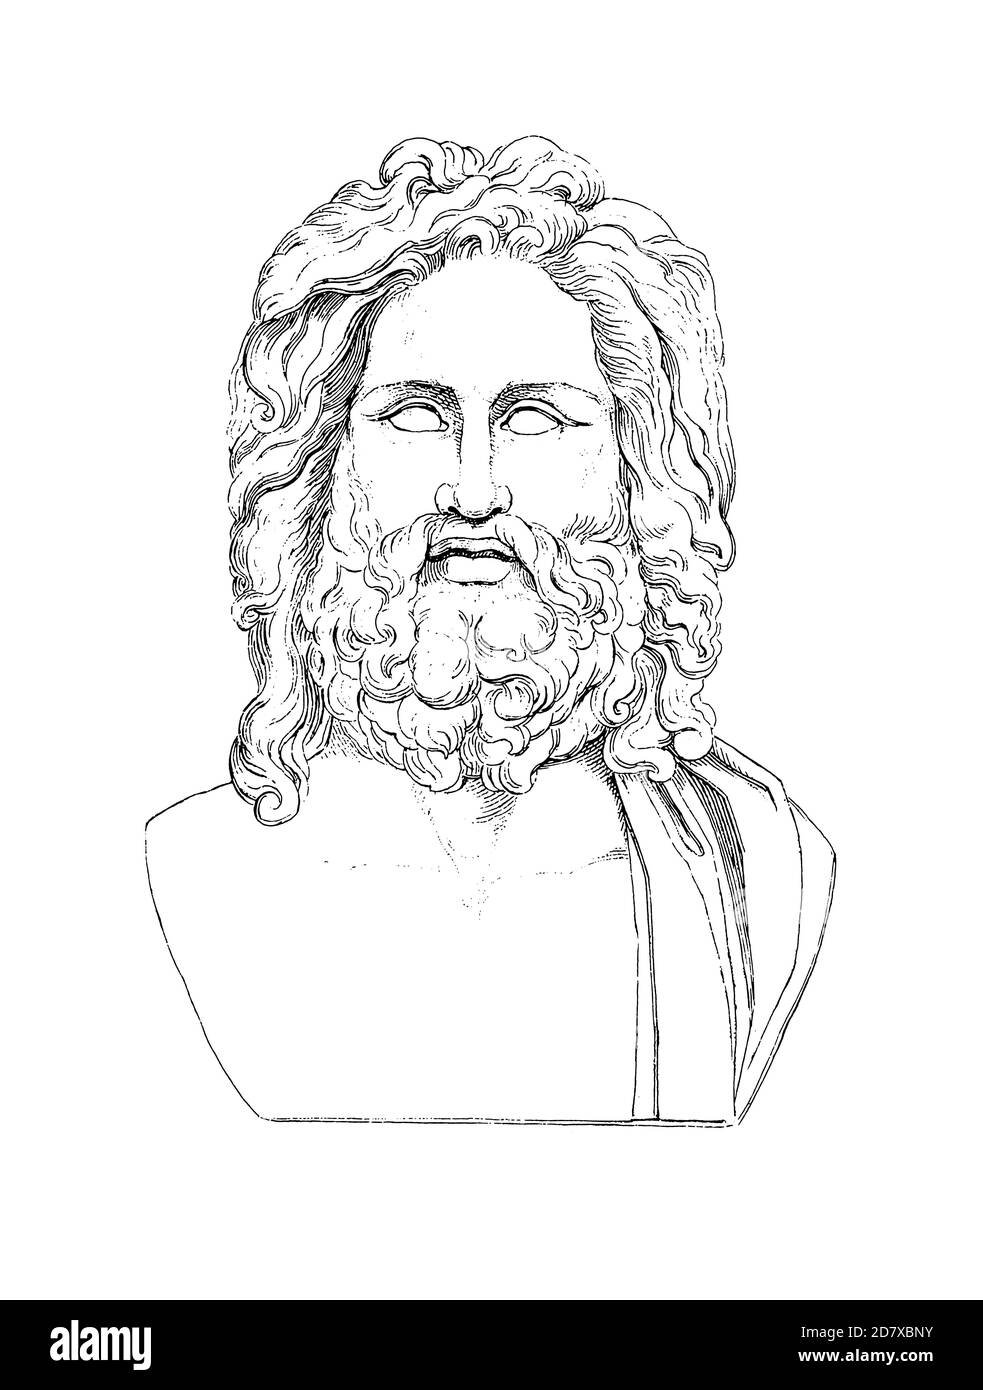 Рисунок бога юпитера. Академический рисунок Зевс в полный рост.